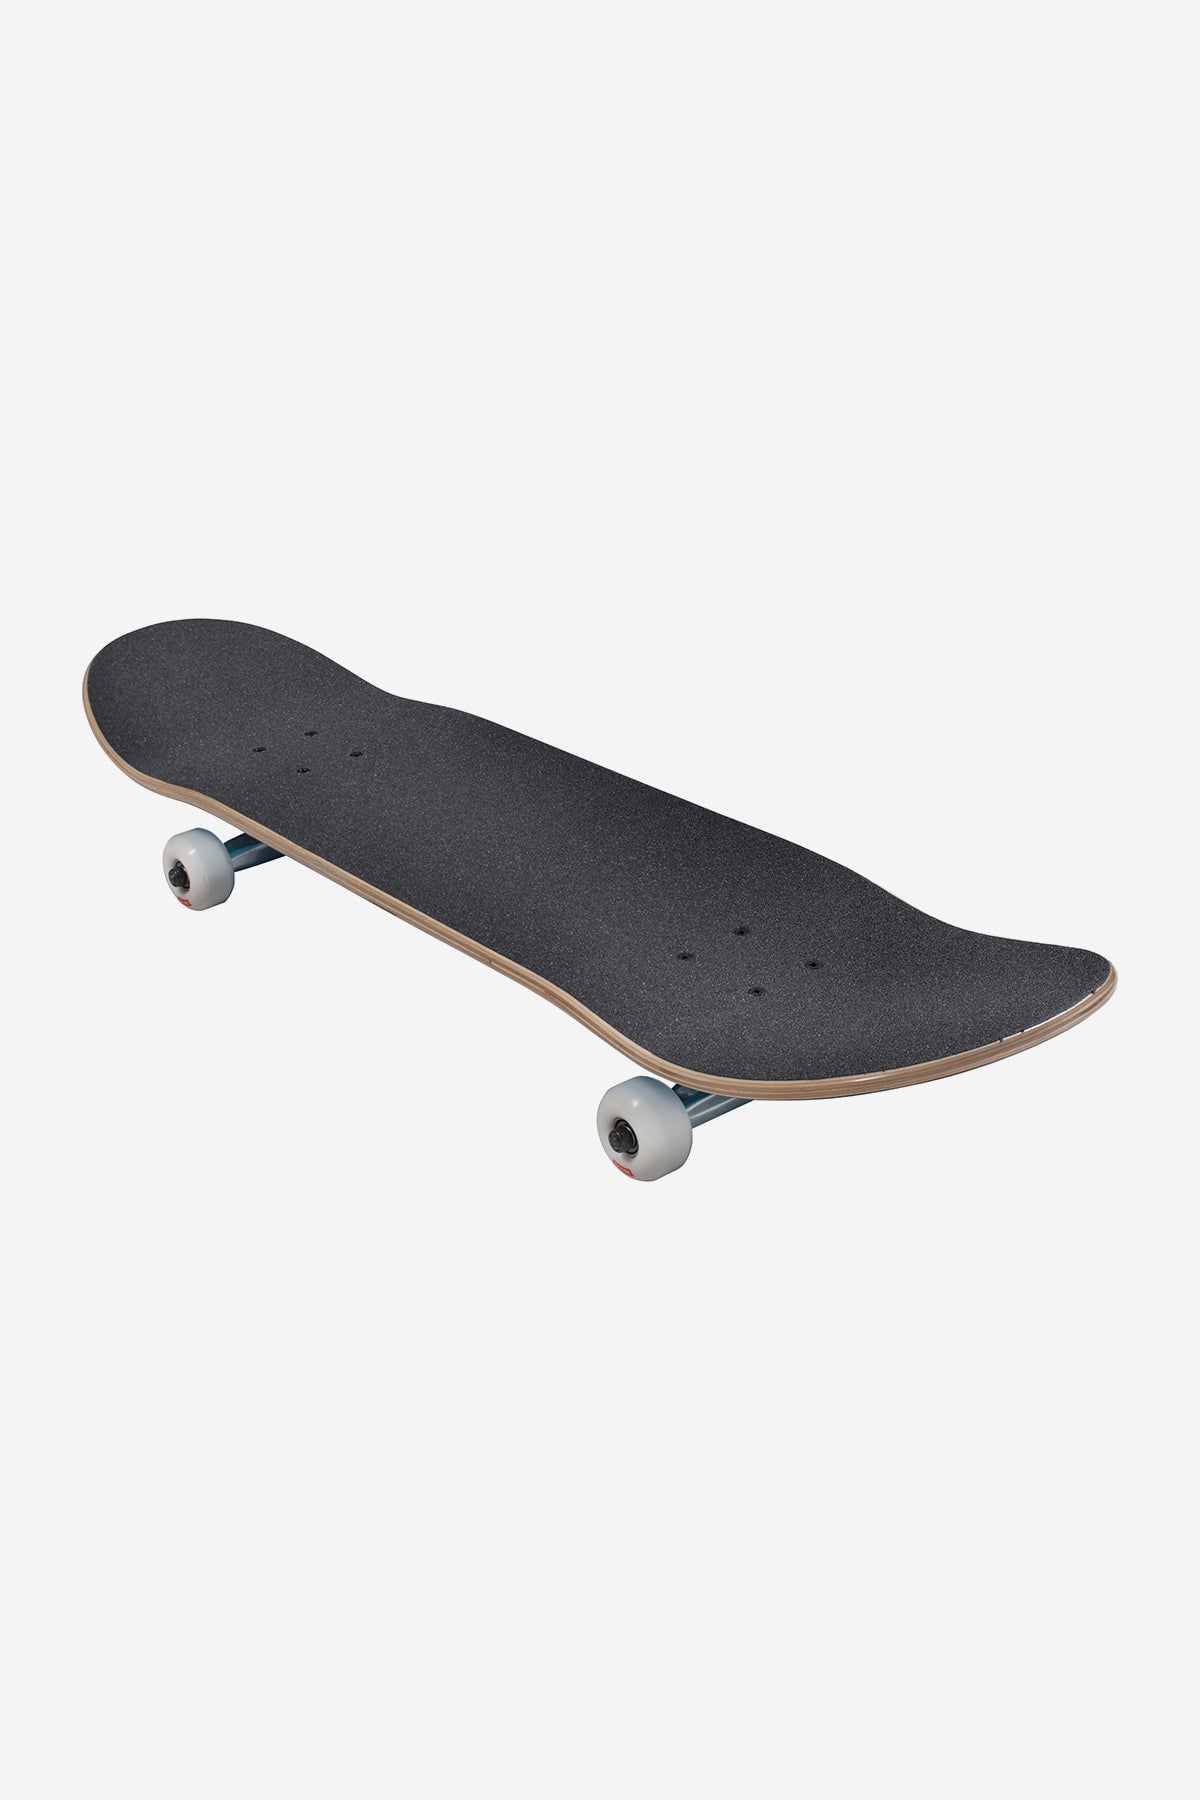 Globe - Goodstock - Navy - 7.875" Complet Skateboard